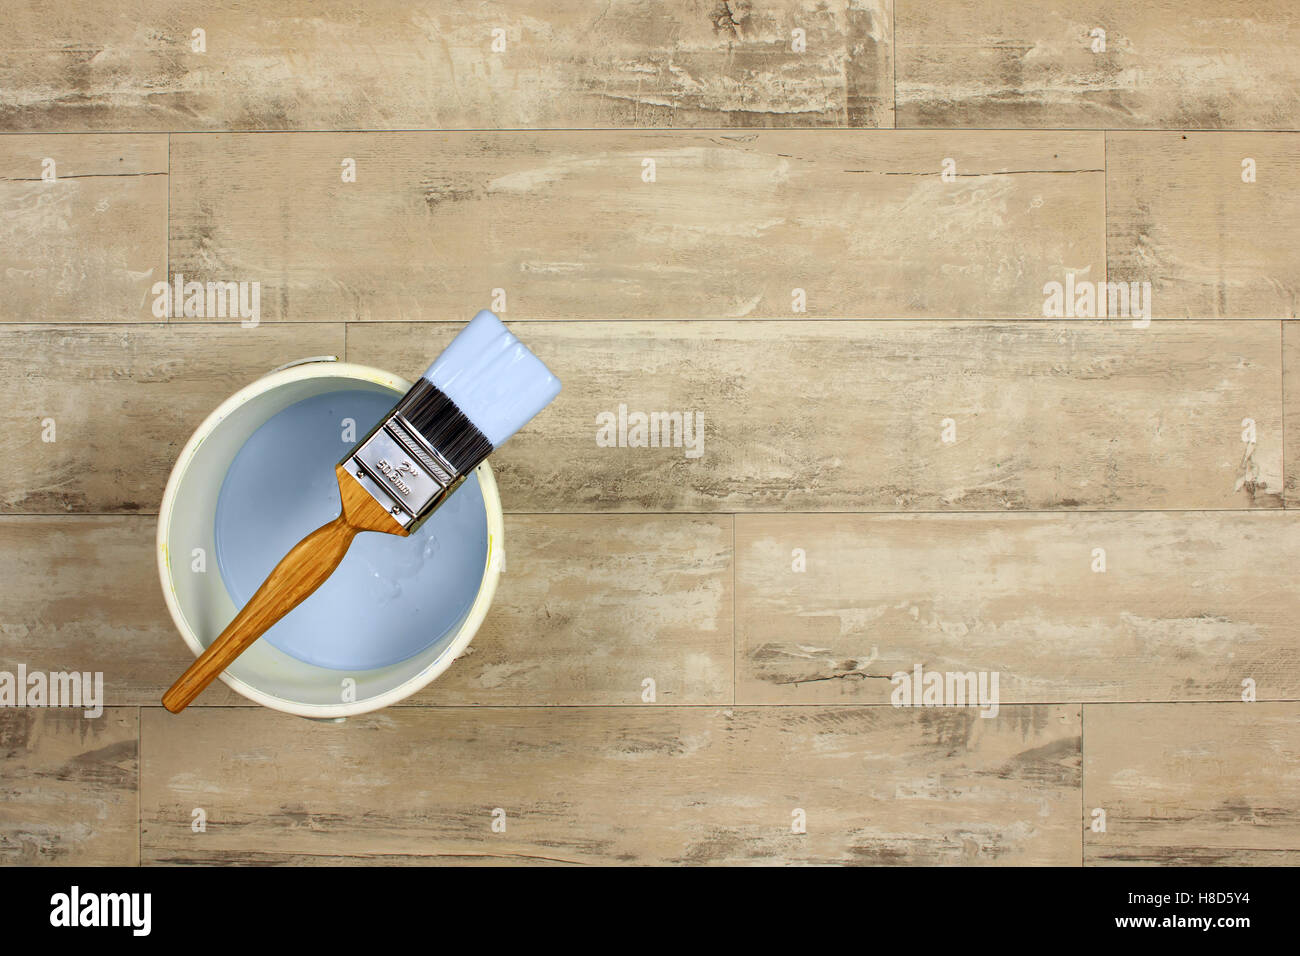 Caricate il pennello collocato attraverso una vernice bianca bollitore pieni di luce la vernice blu su uno squallido stile pavimento in legno Foto Stock